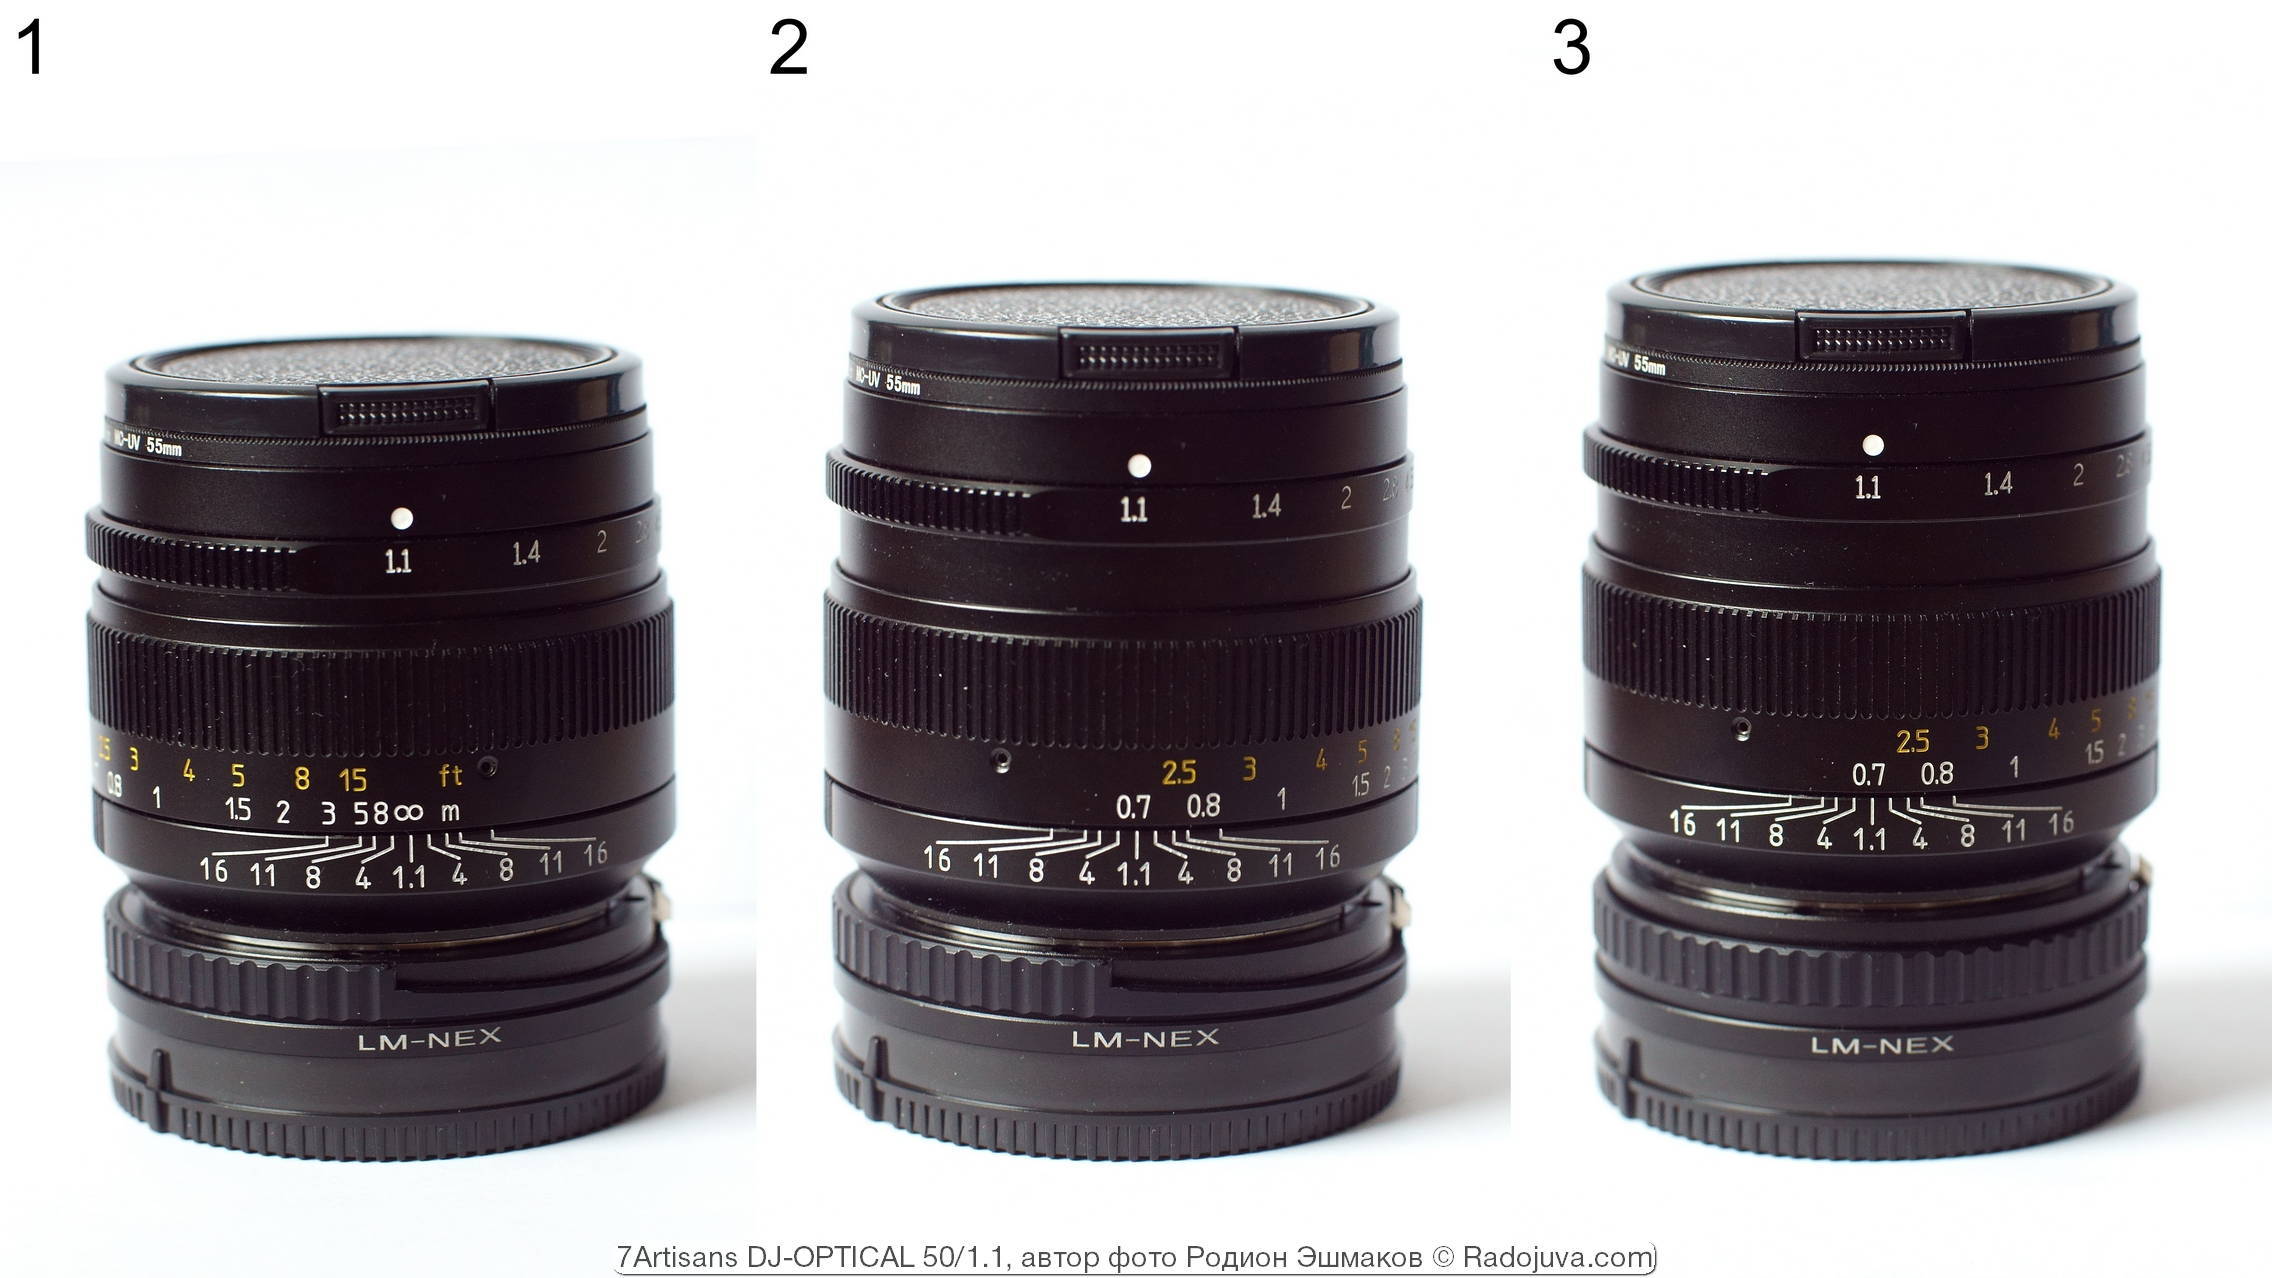 De afmetingen van 7 ambachtslieden wijzigen bij het scherpstellen: 1 - focus op oneindig, 2 - focus op MDF met een helicoïde lens, 3 - focus op MDF met een helicoïde lens en LM-NEX-adapter.